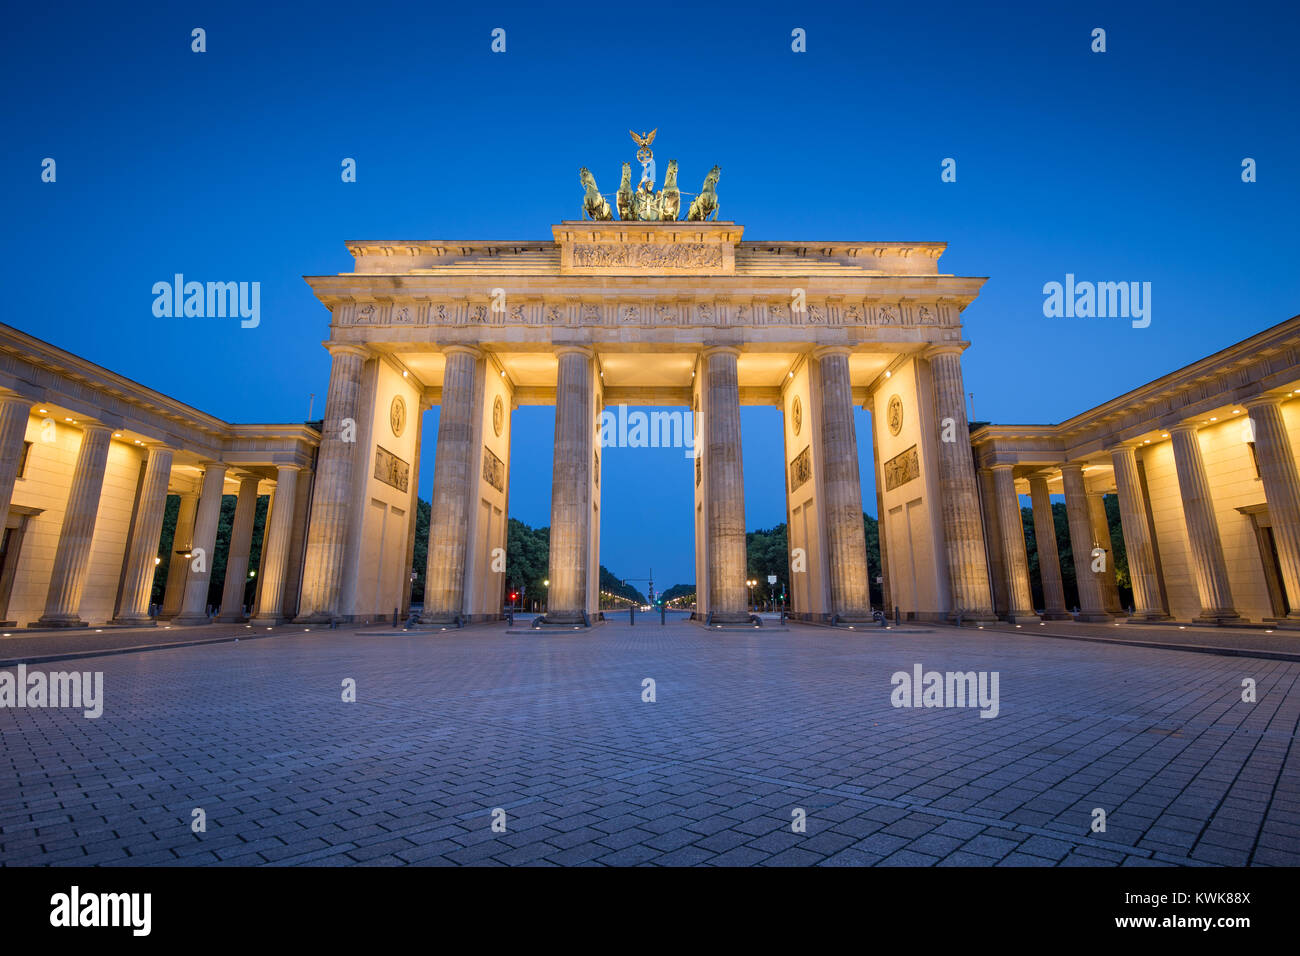 La vue classique du célèbre Brandenburger Tor (Porte de Brandebourg), l'un des plus célèbres monuments et symboles nationaux de l'Allemagne, au crépuscule pendant blue Banque D'Images